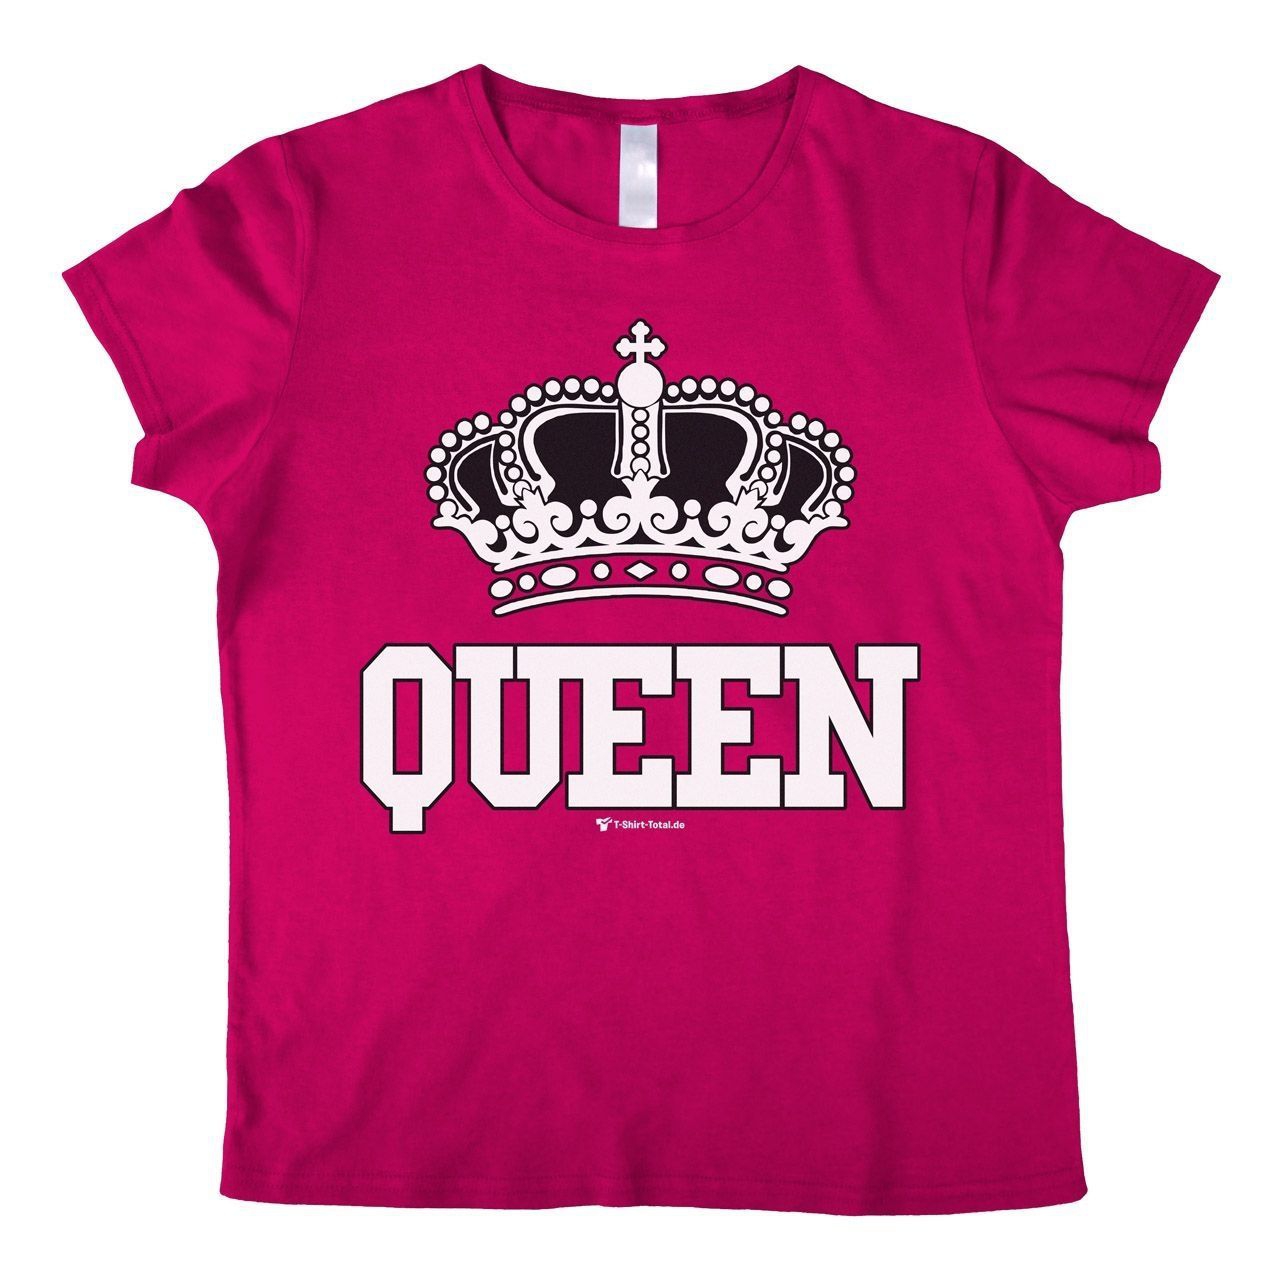 Queen Woman T-Shirt pink Medium